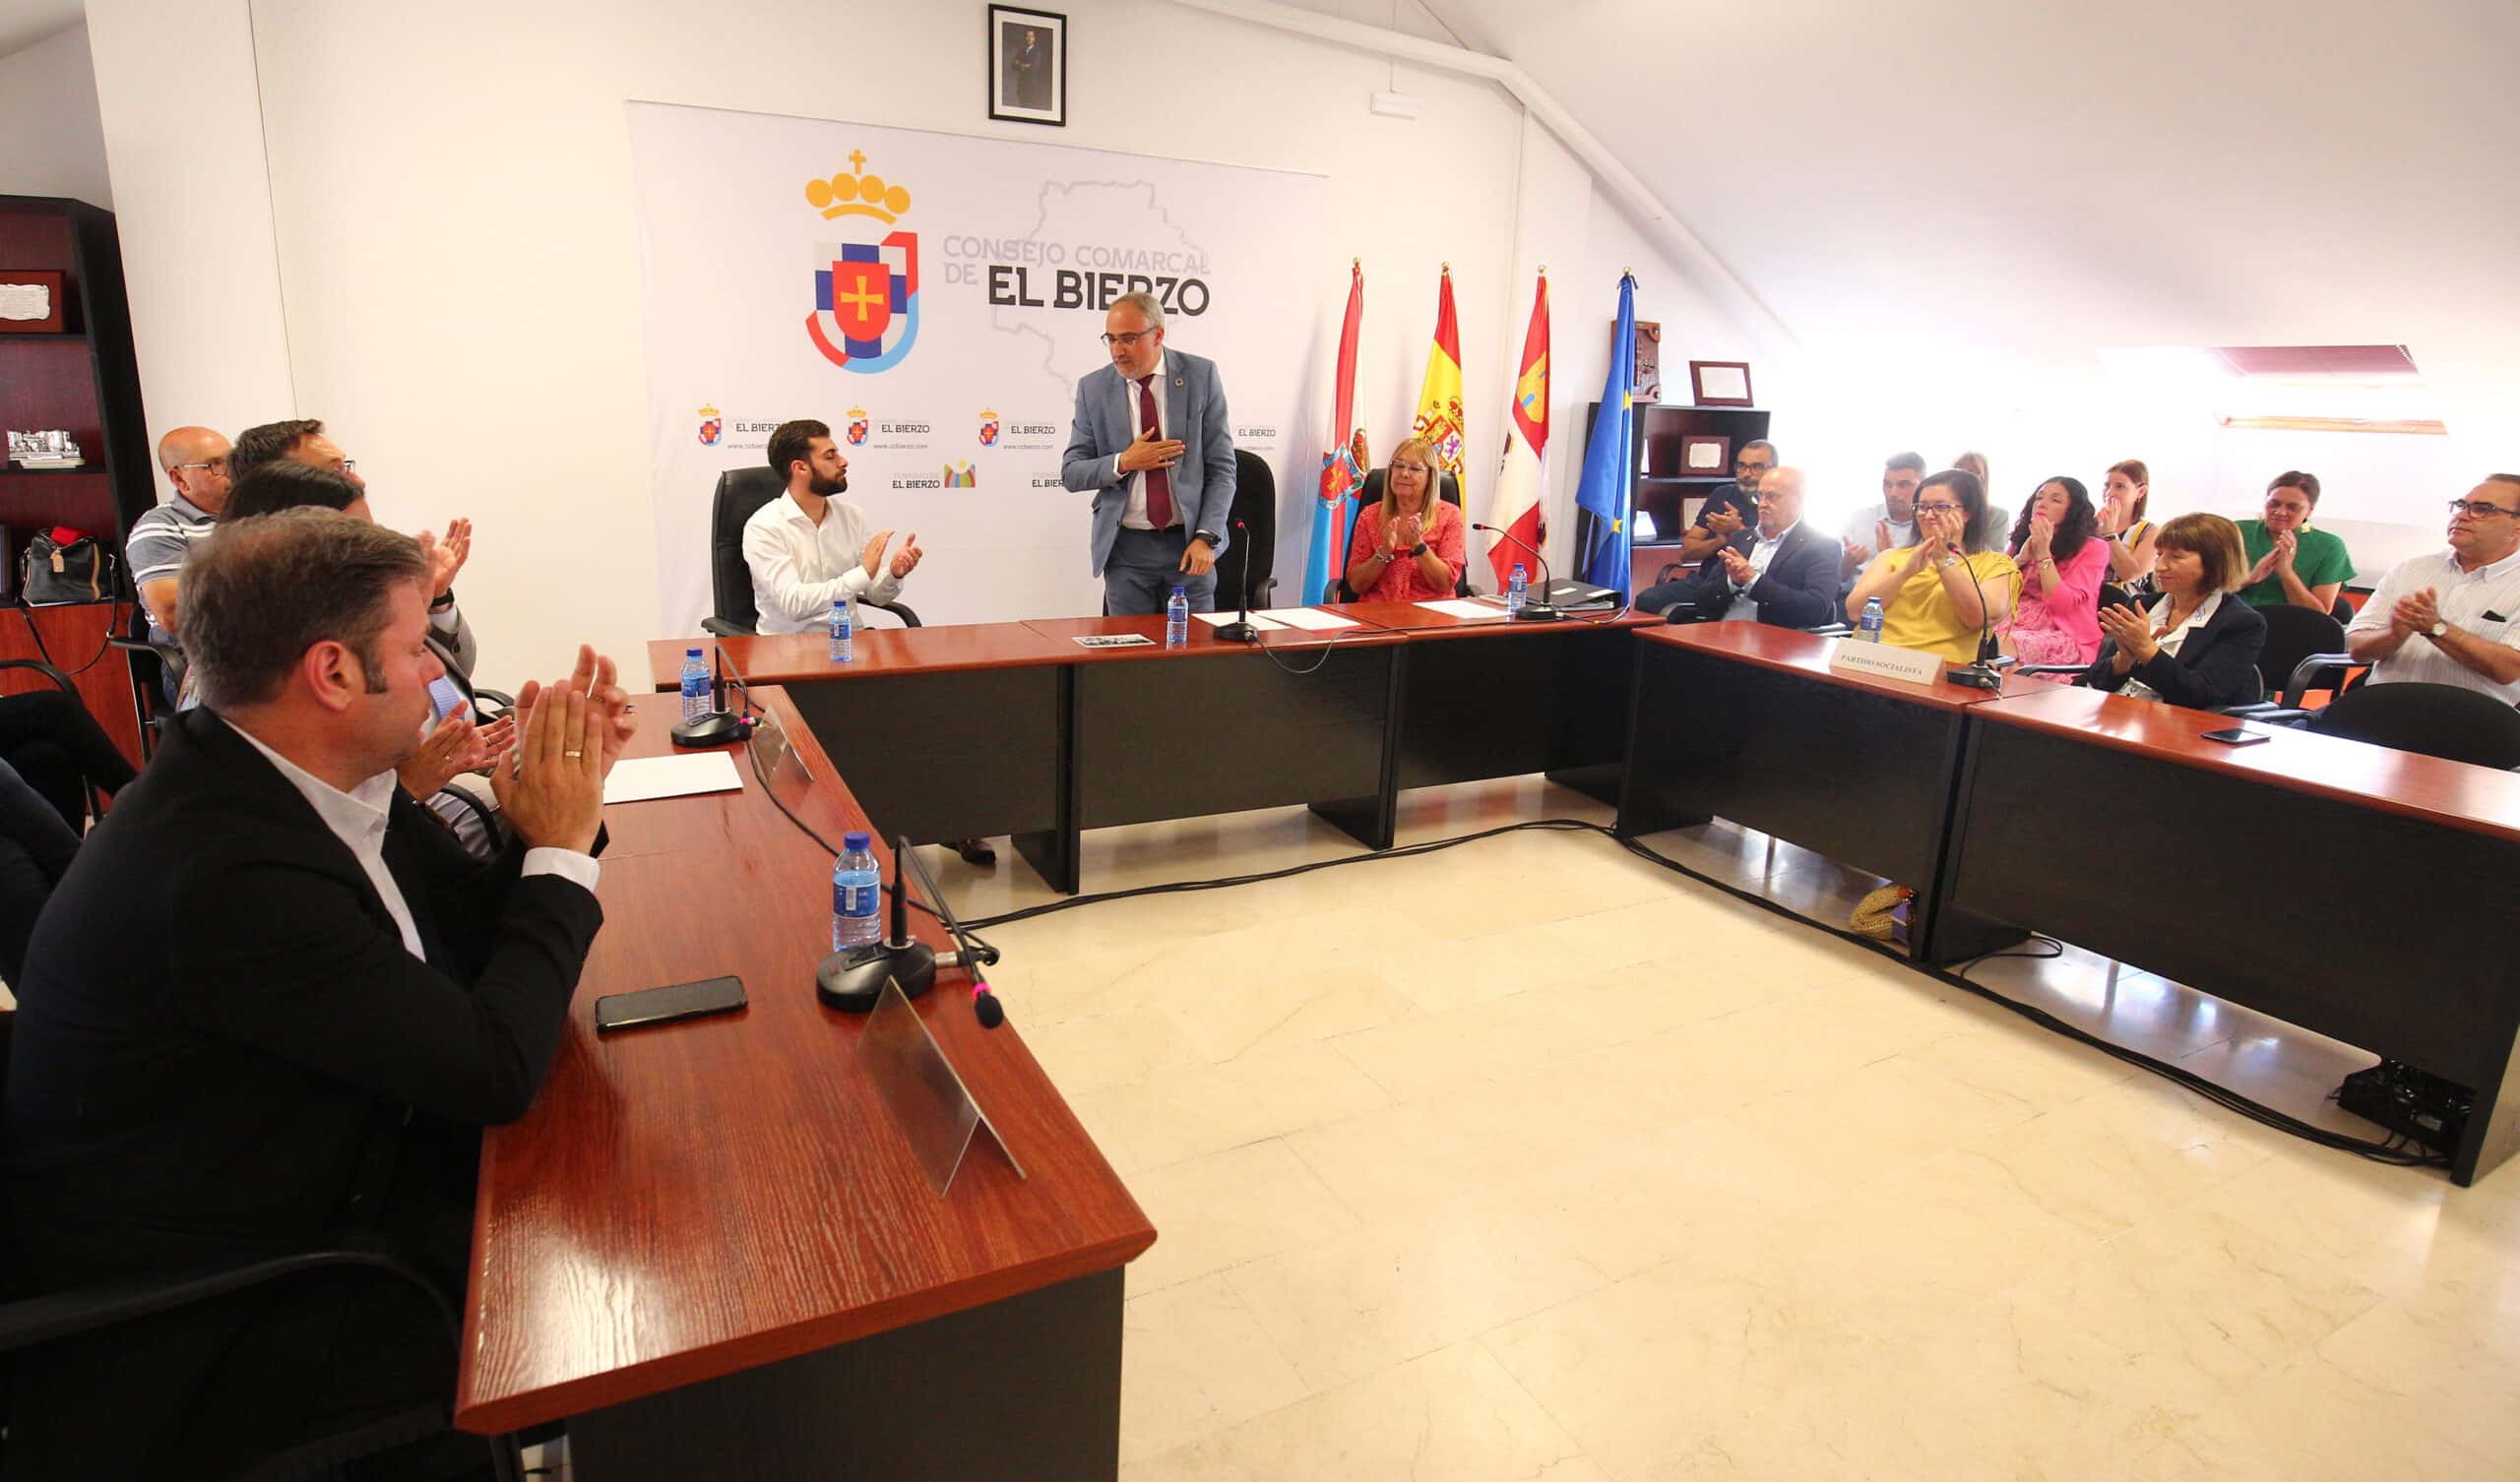 Olegario Ramón (PSOE), presidente del Consejo Comarcal de El Bierzo con mayoría absoluta